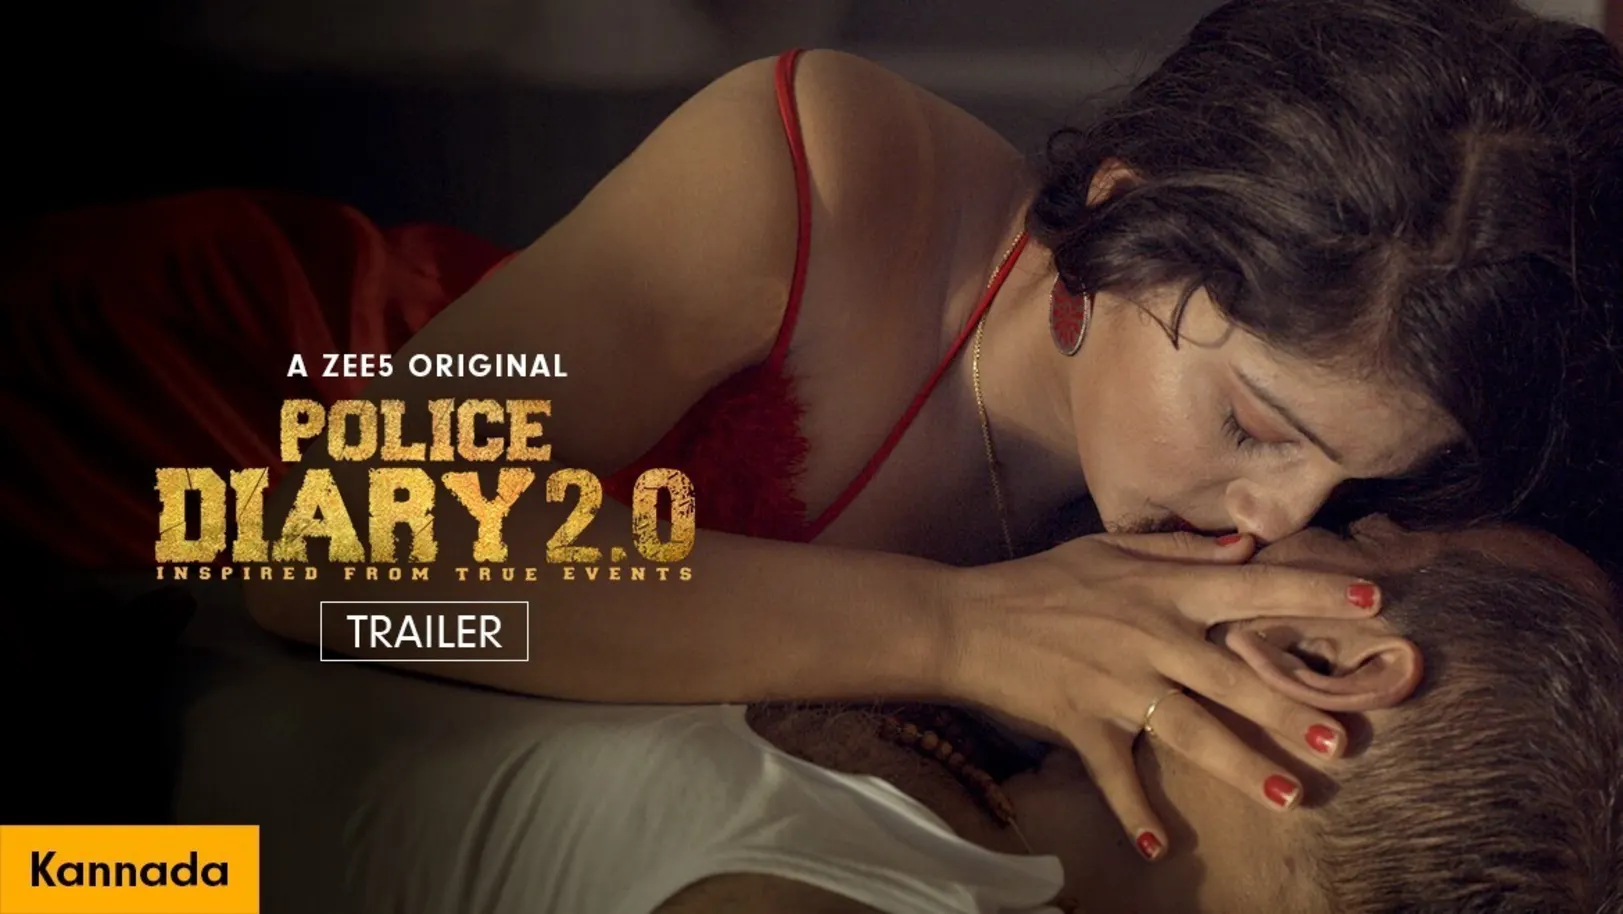 Police Diary 2.0 | Kannada | Trailer